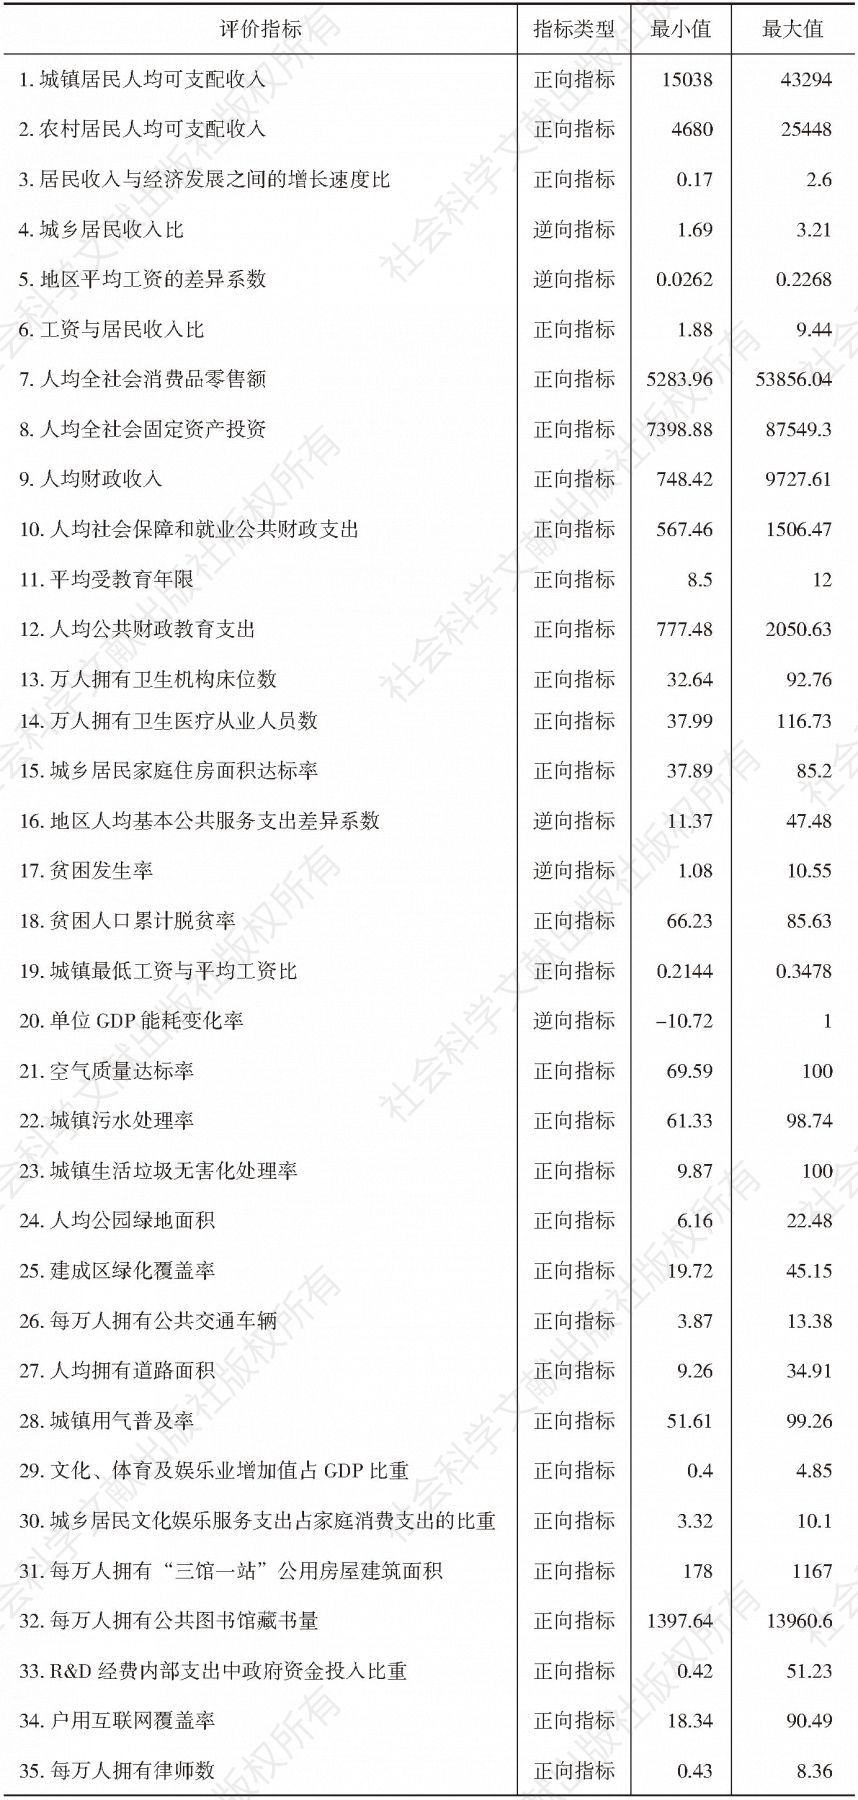 表2-2  湖南省共享发展评价指标无量纲处理限值